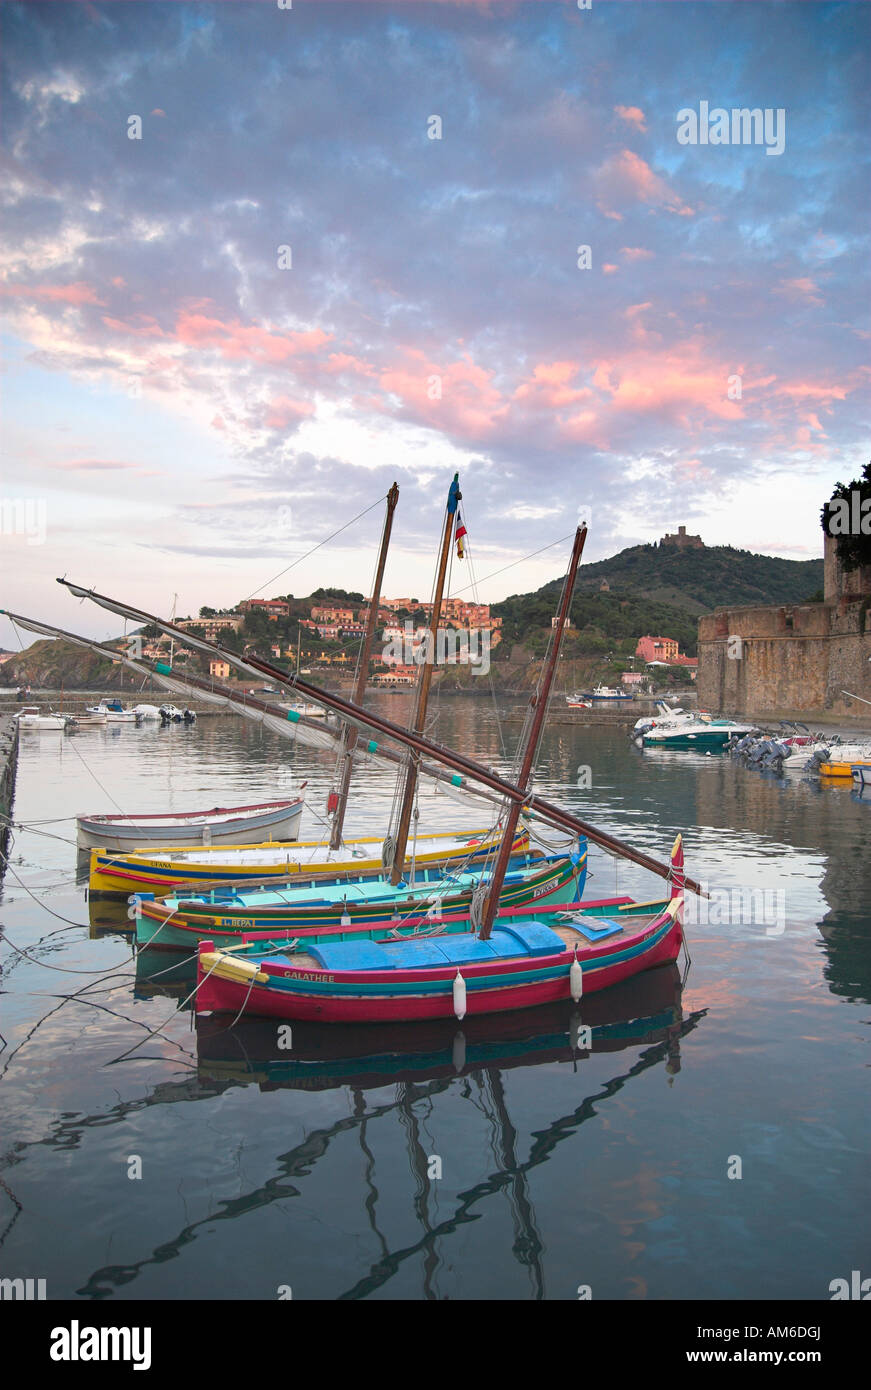 La pêche traditionnelle des bateaux amarrés dans le port de Collioure au coucher du soleil Languedoc Roussilon France Banque D'Images